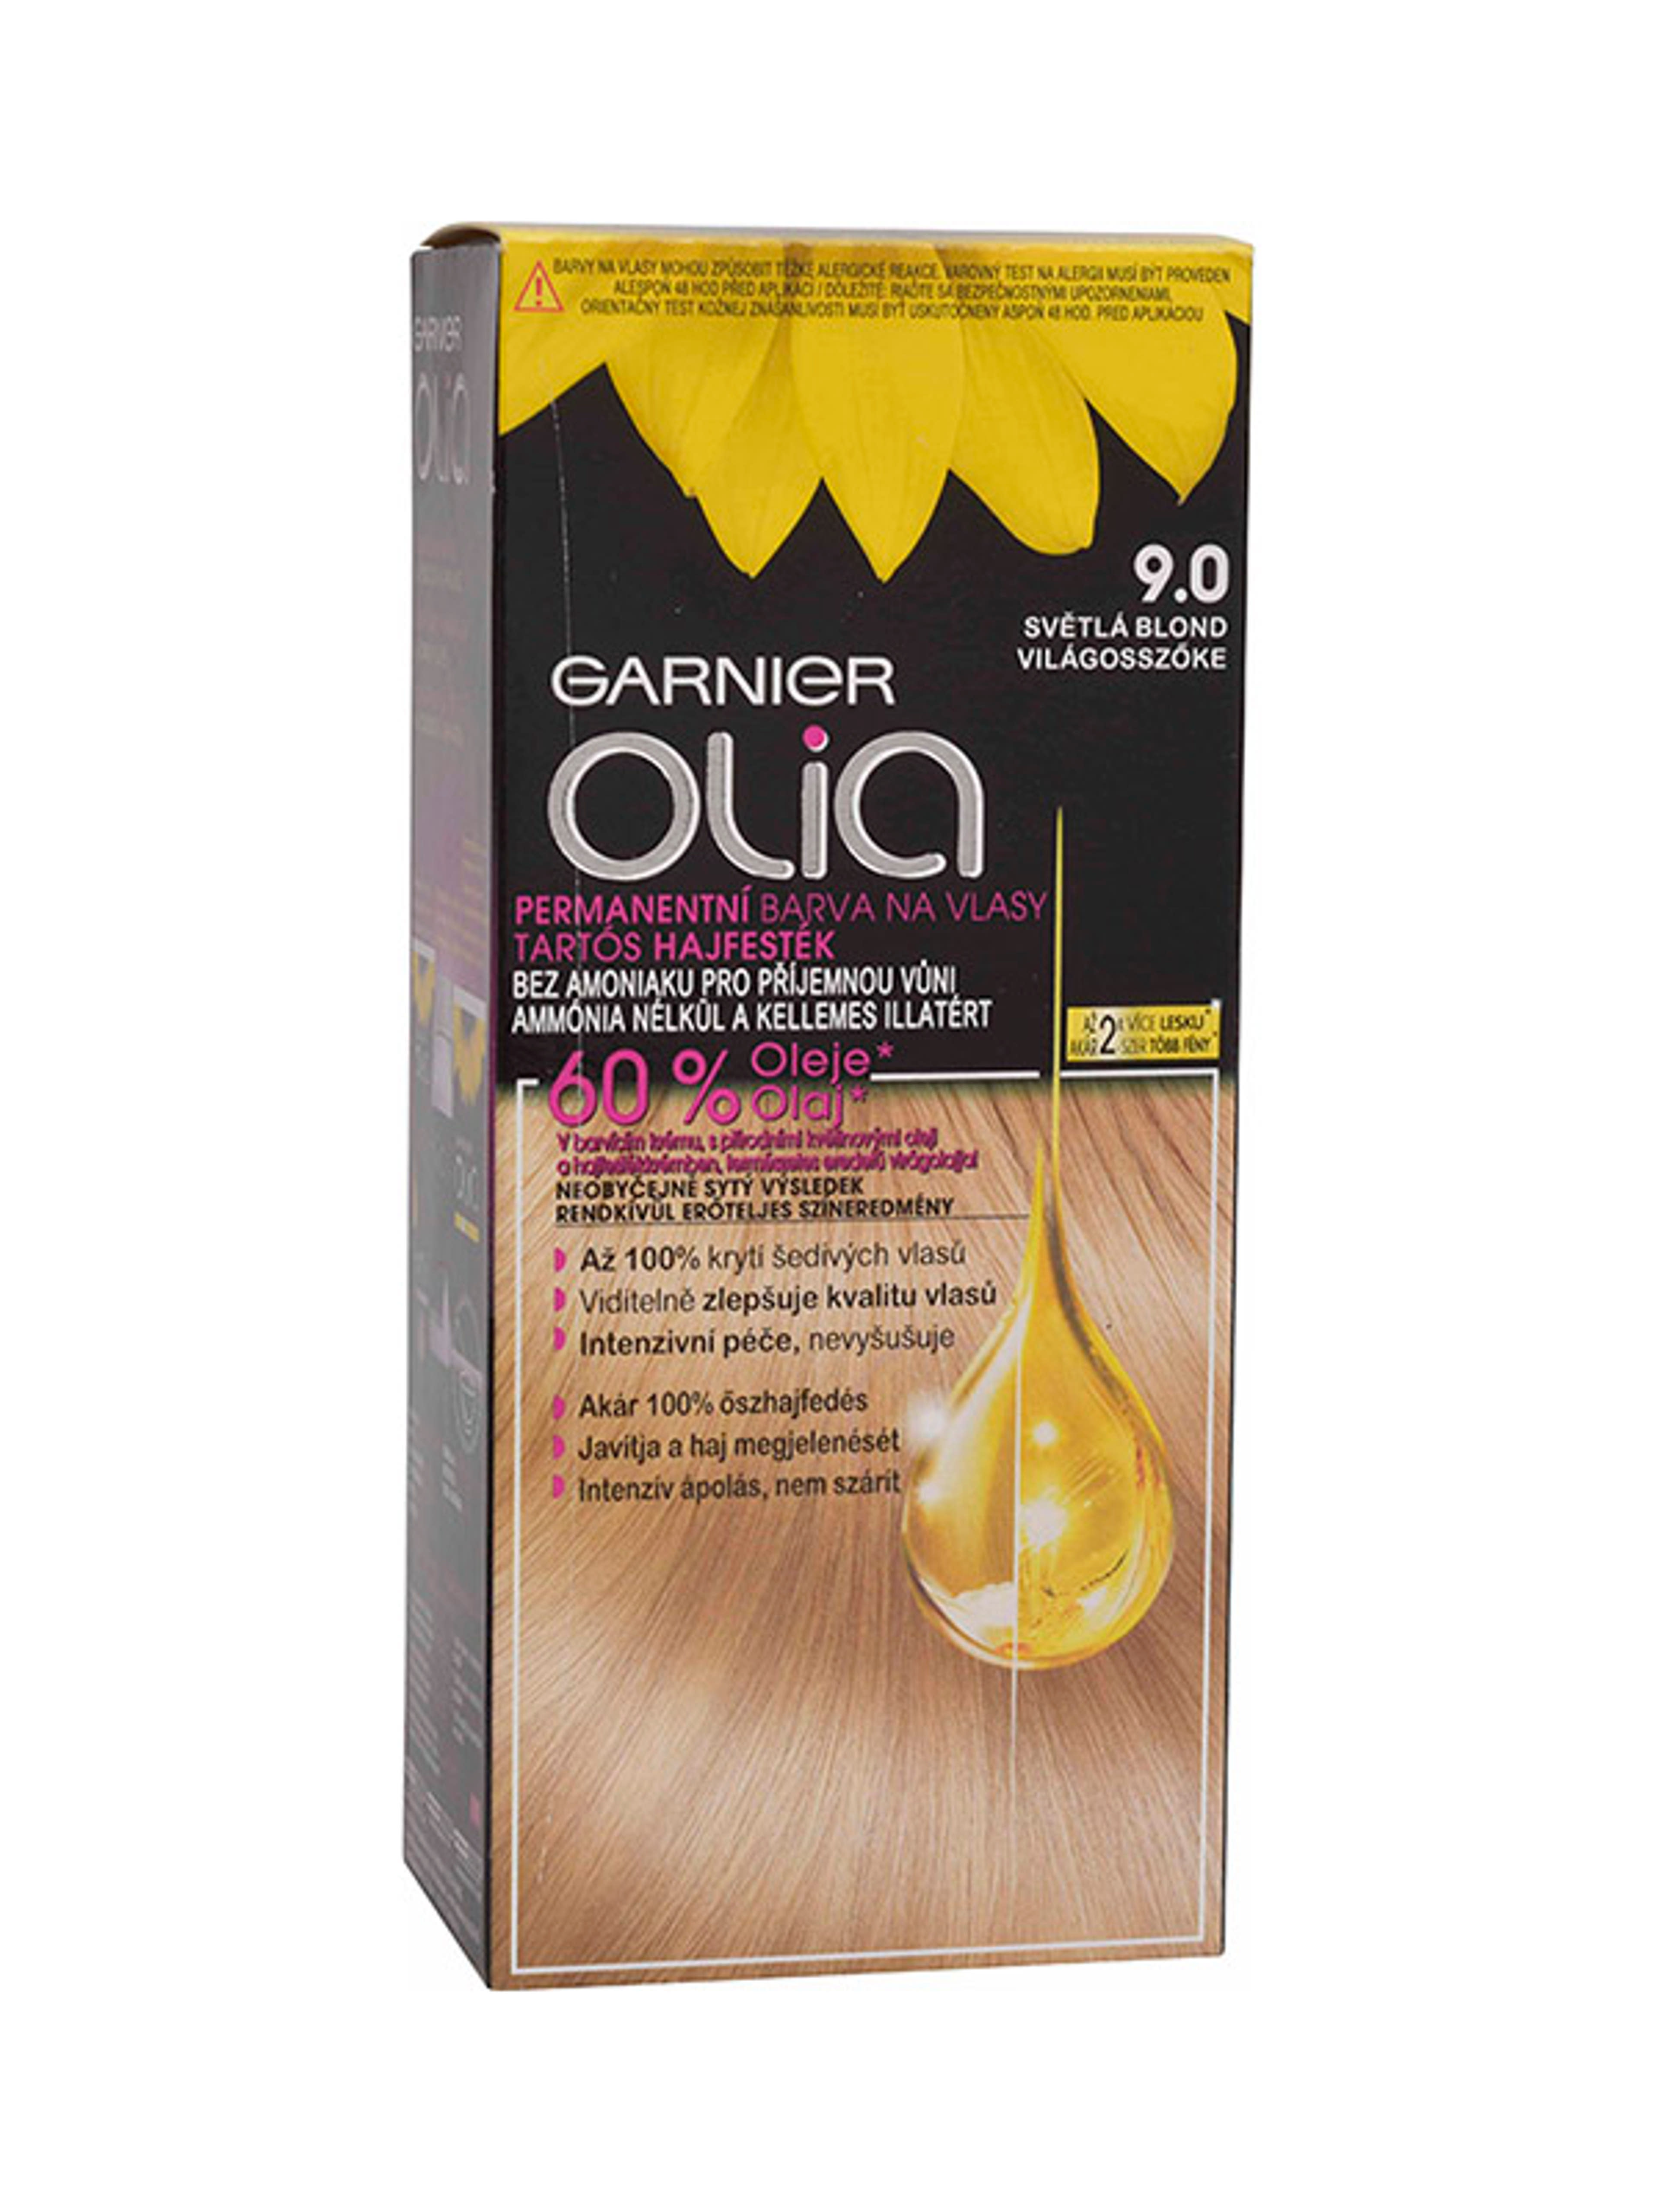 Garnier Olia tartós hajfesték 9.0 Világosszőke - 1 db-2